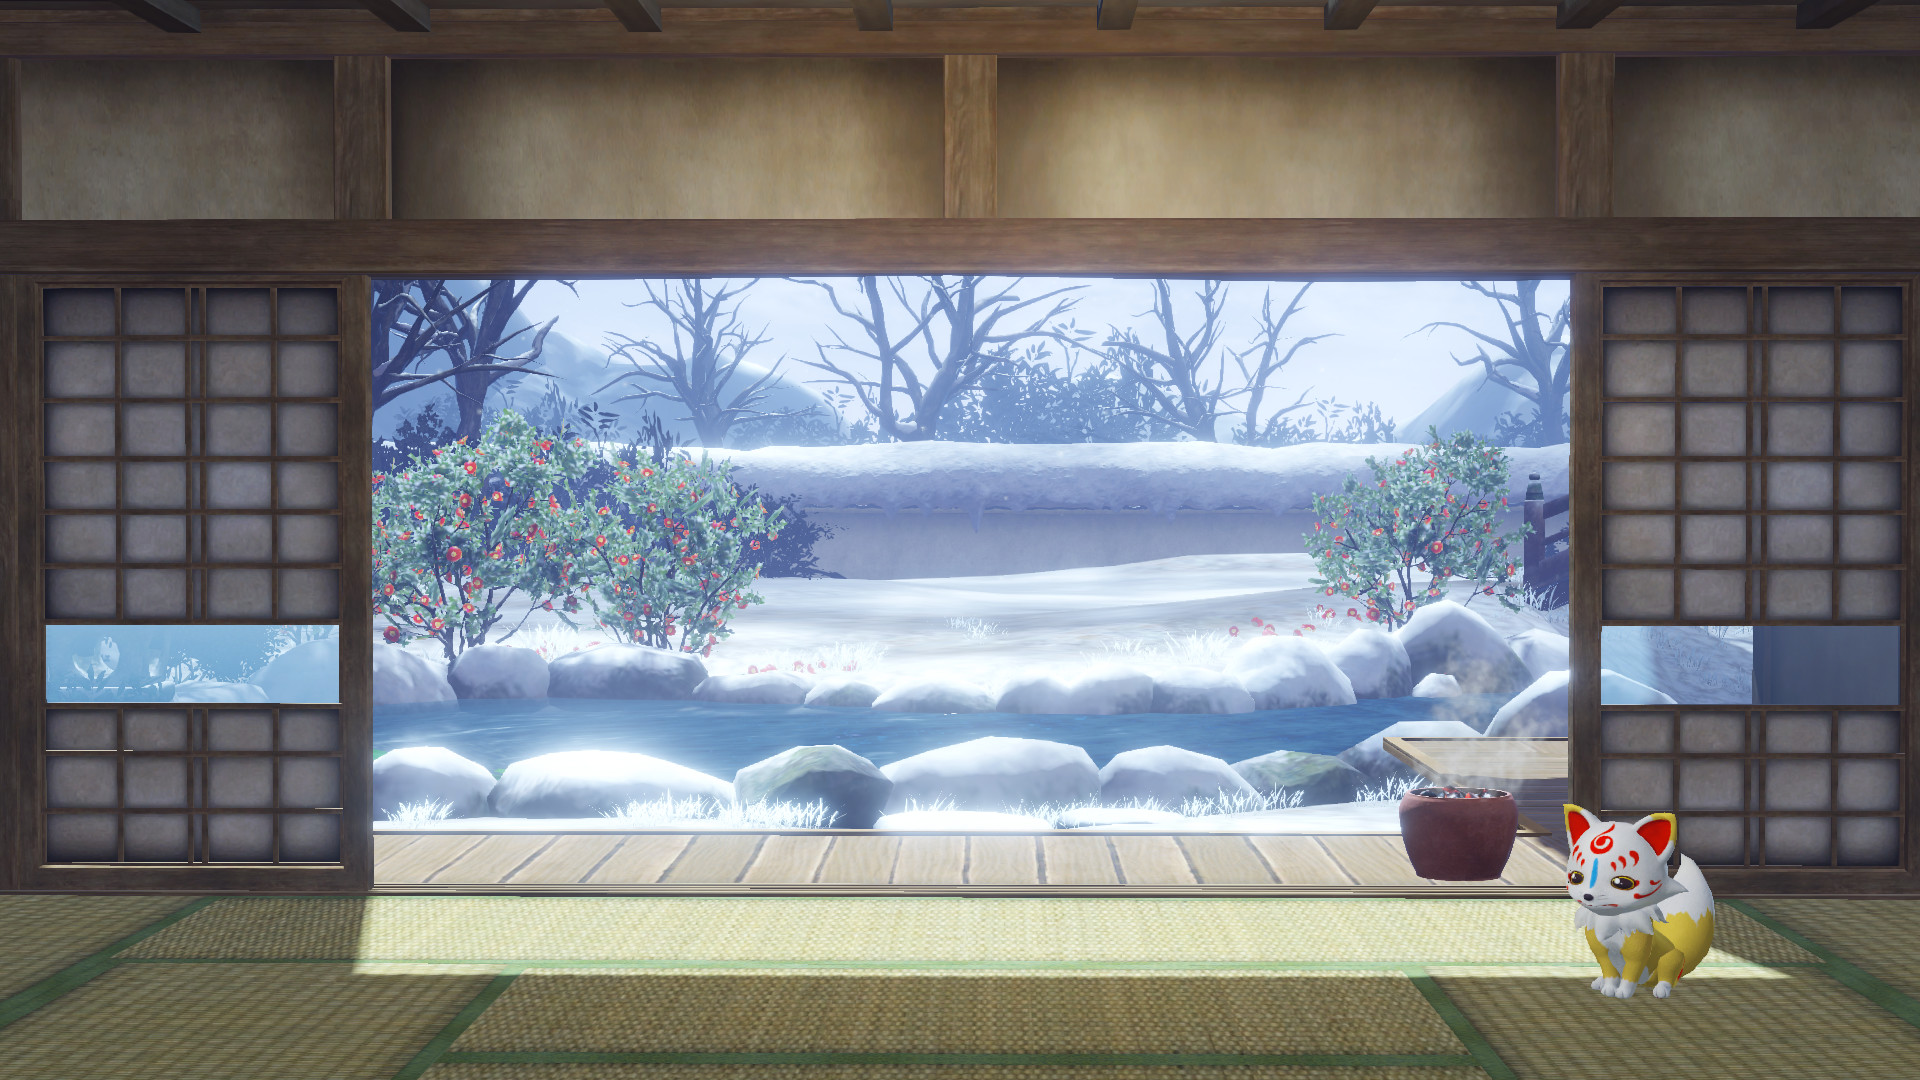 Touken Ranbu Warriors - Honmaru Backdrop "Snow Viewing" Featured Screenshot #1